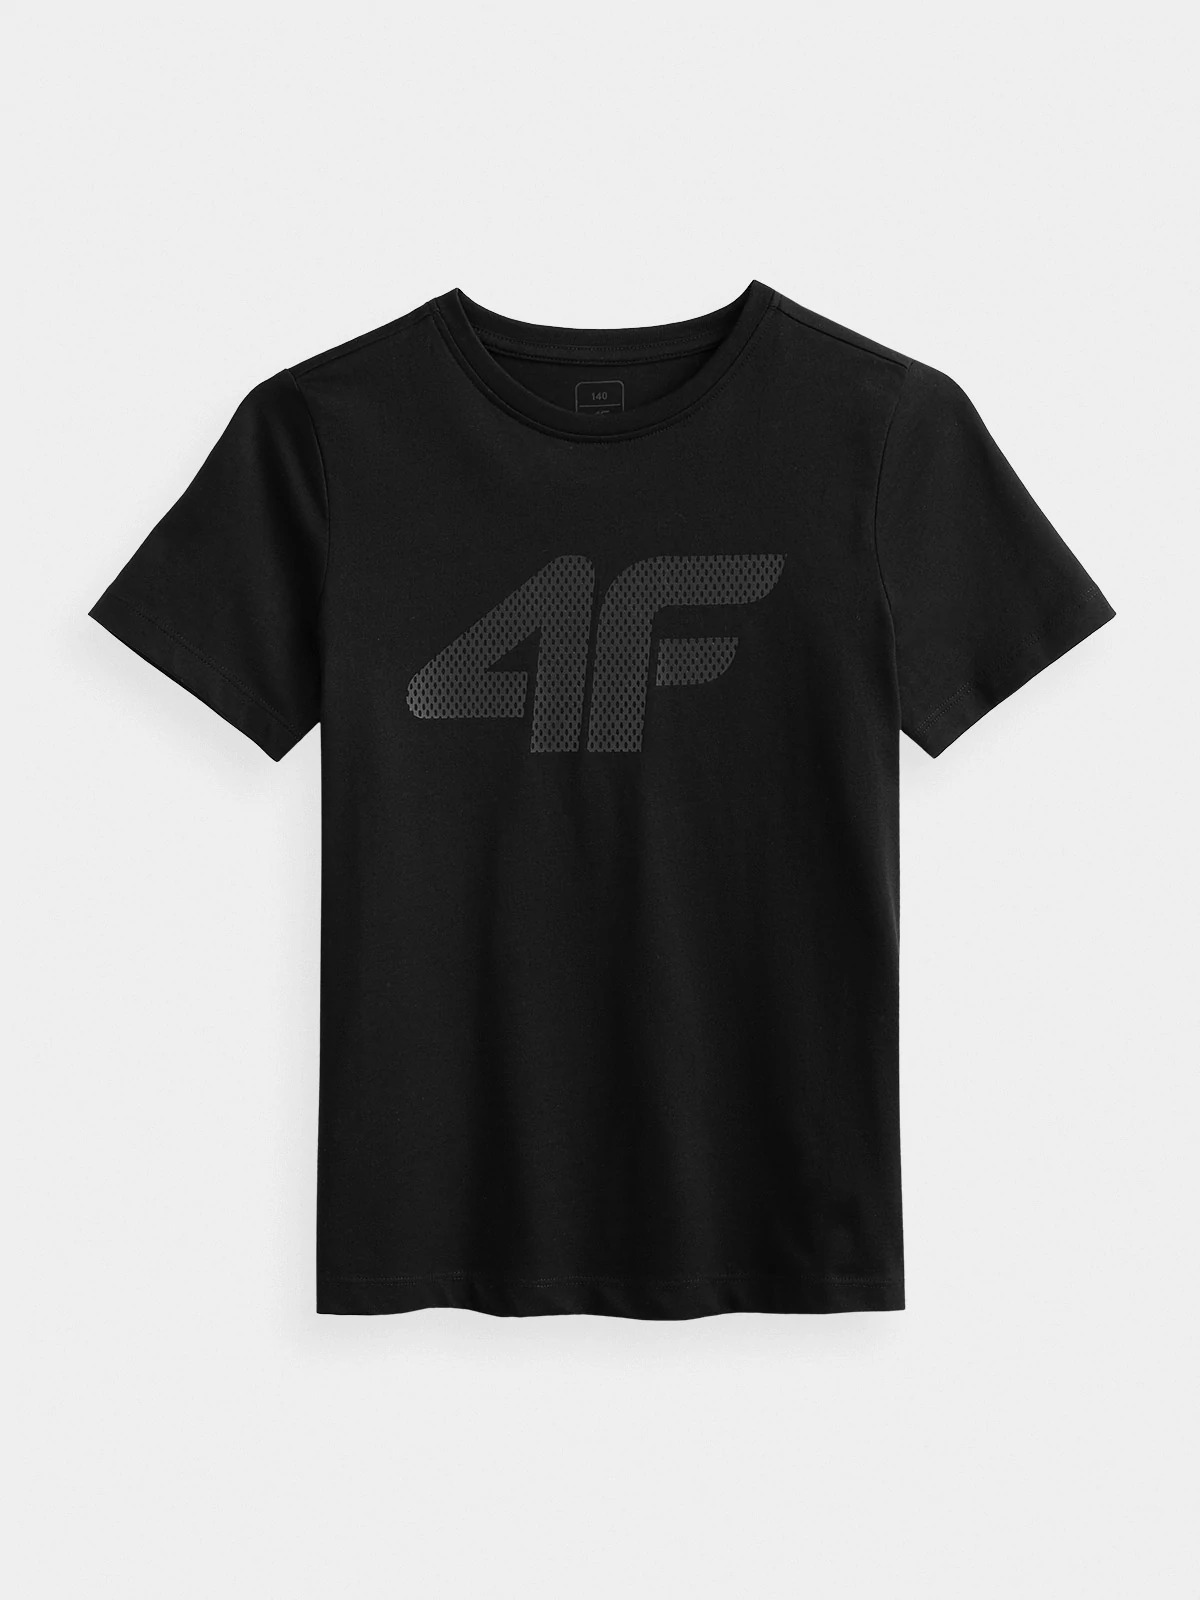 фото Футболка 4f boy's t-shirts hjz21-jtsm001a-20s цв.черный р. 146